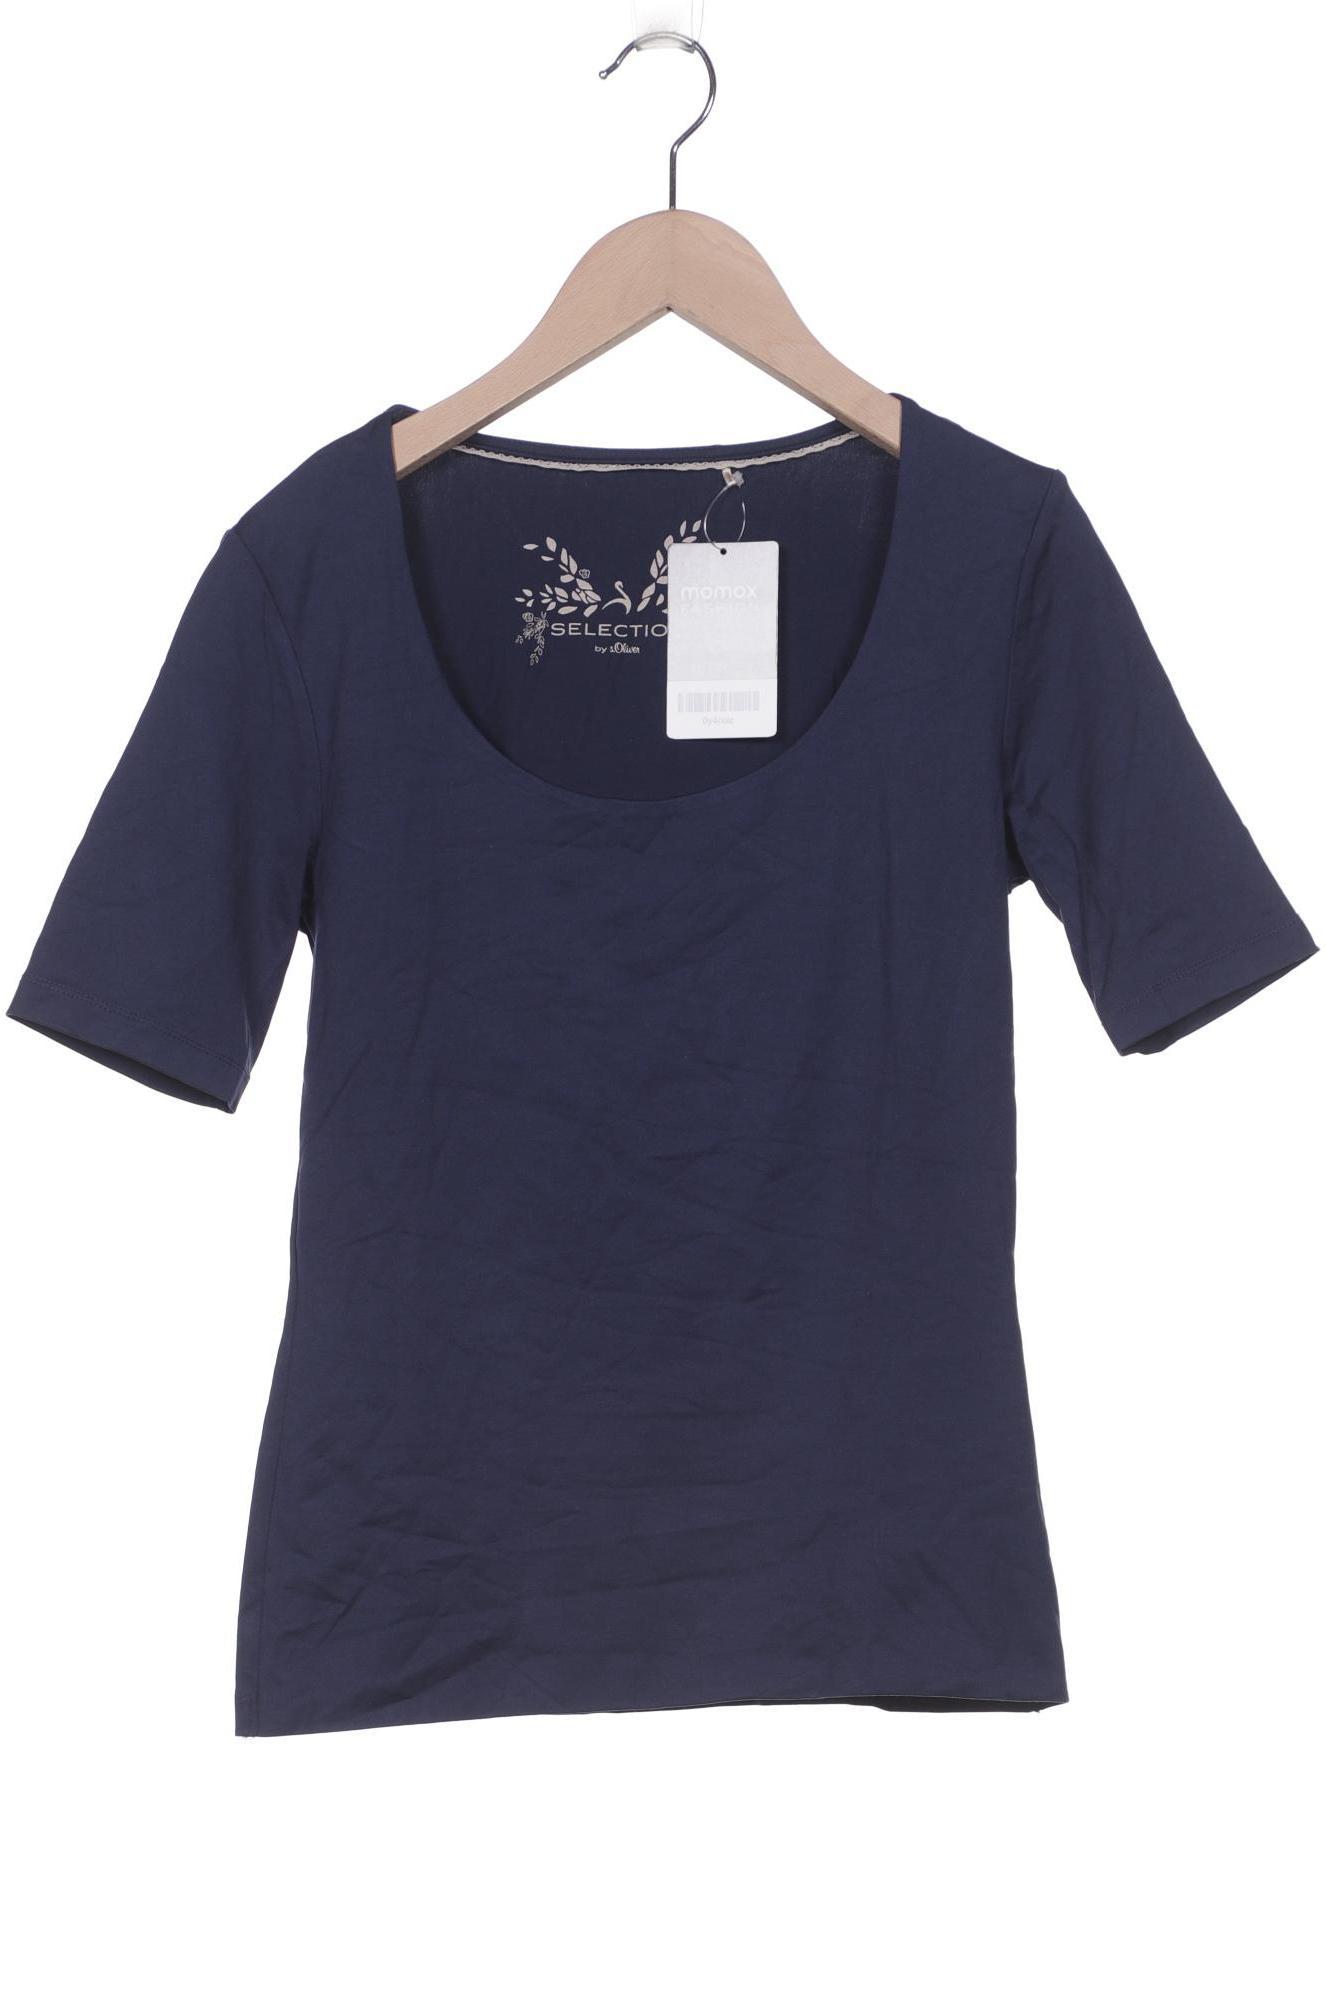 s.Oliver Selection Damen T-Shirt, marineblau von s.Oliver Selection